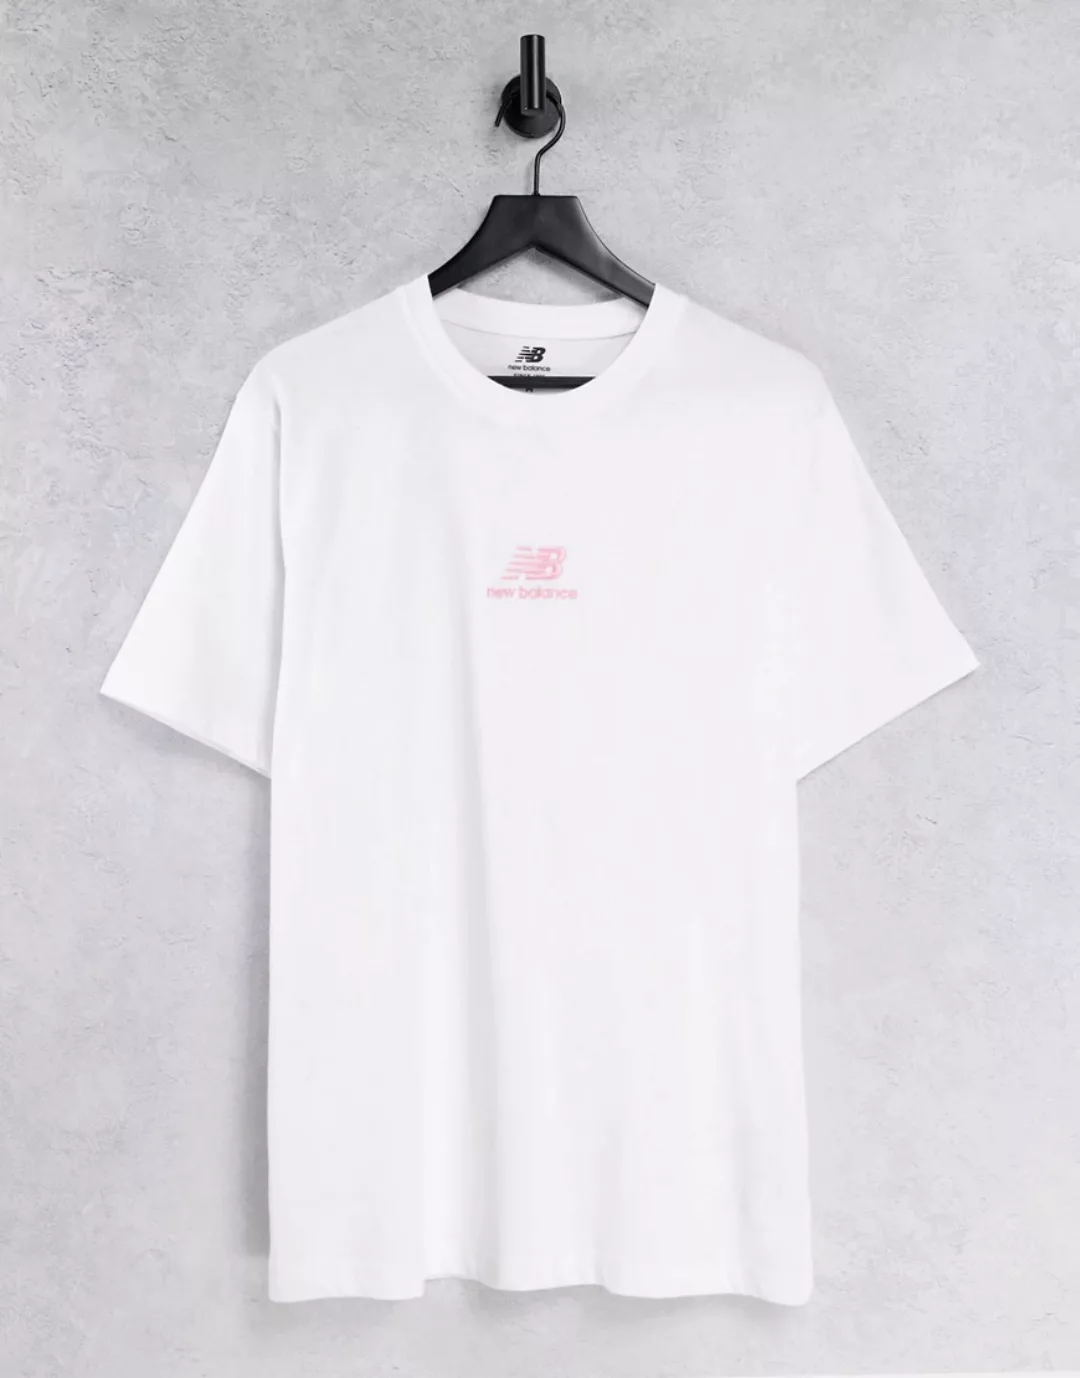 New Balance – T-Shirt in Weiß und Rosa mit gestapeltem Logo, exklusiv bei A günstig online kaufen